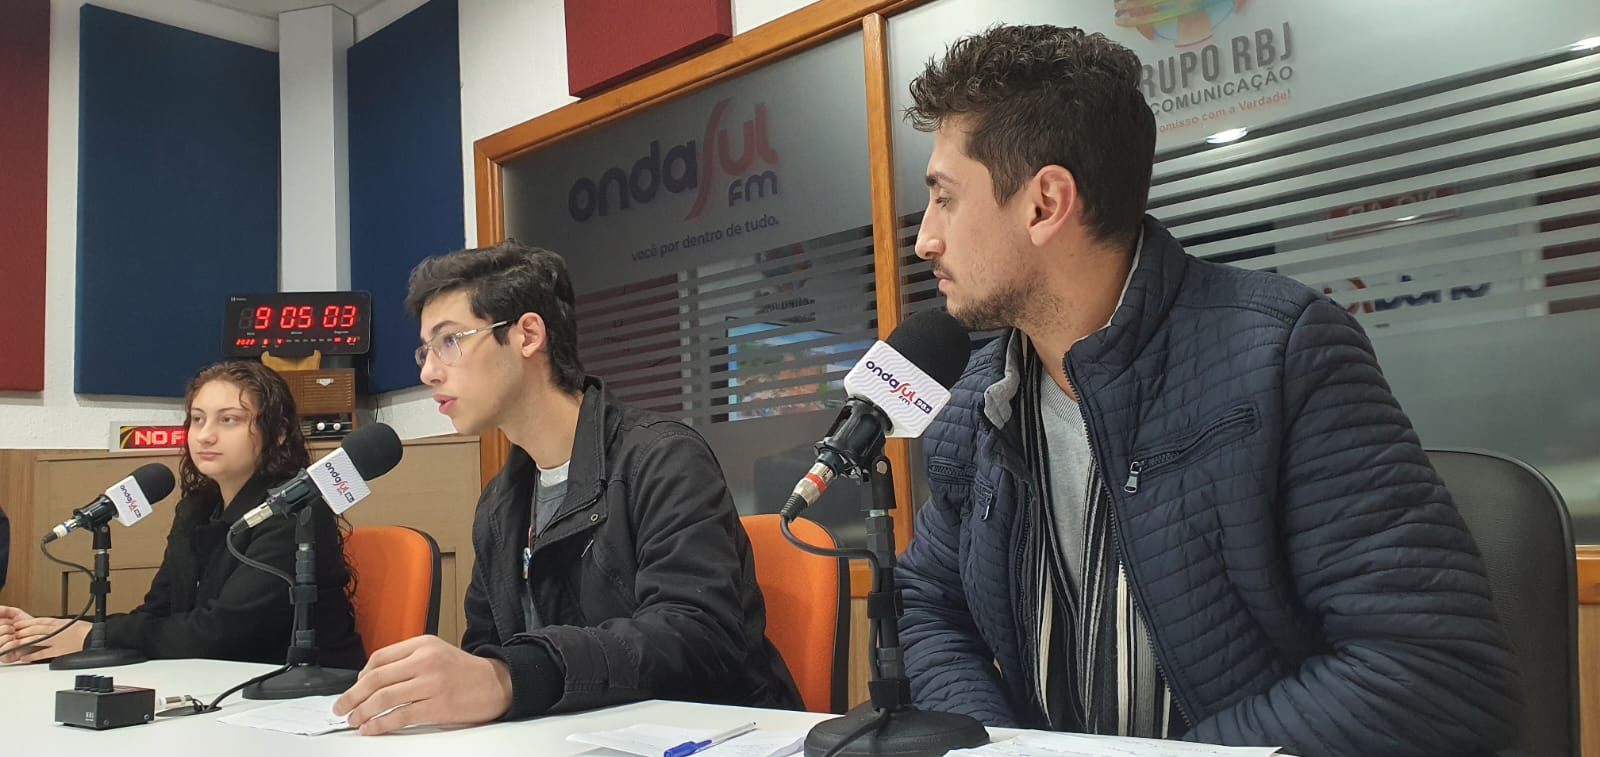 Podcast RBJ: Estudantes se mobilizarão em Francisco Beltrão no dia 09/06